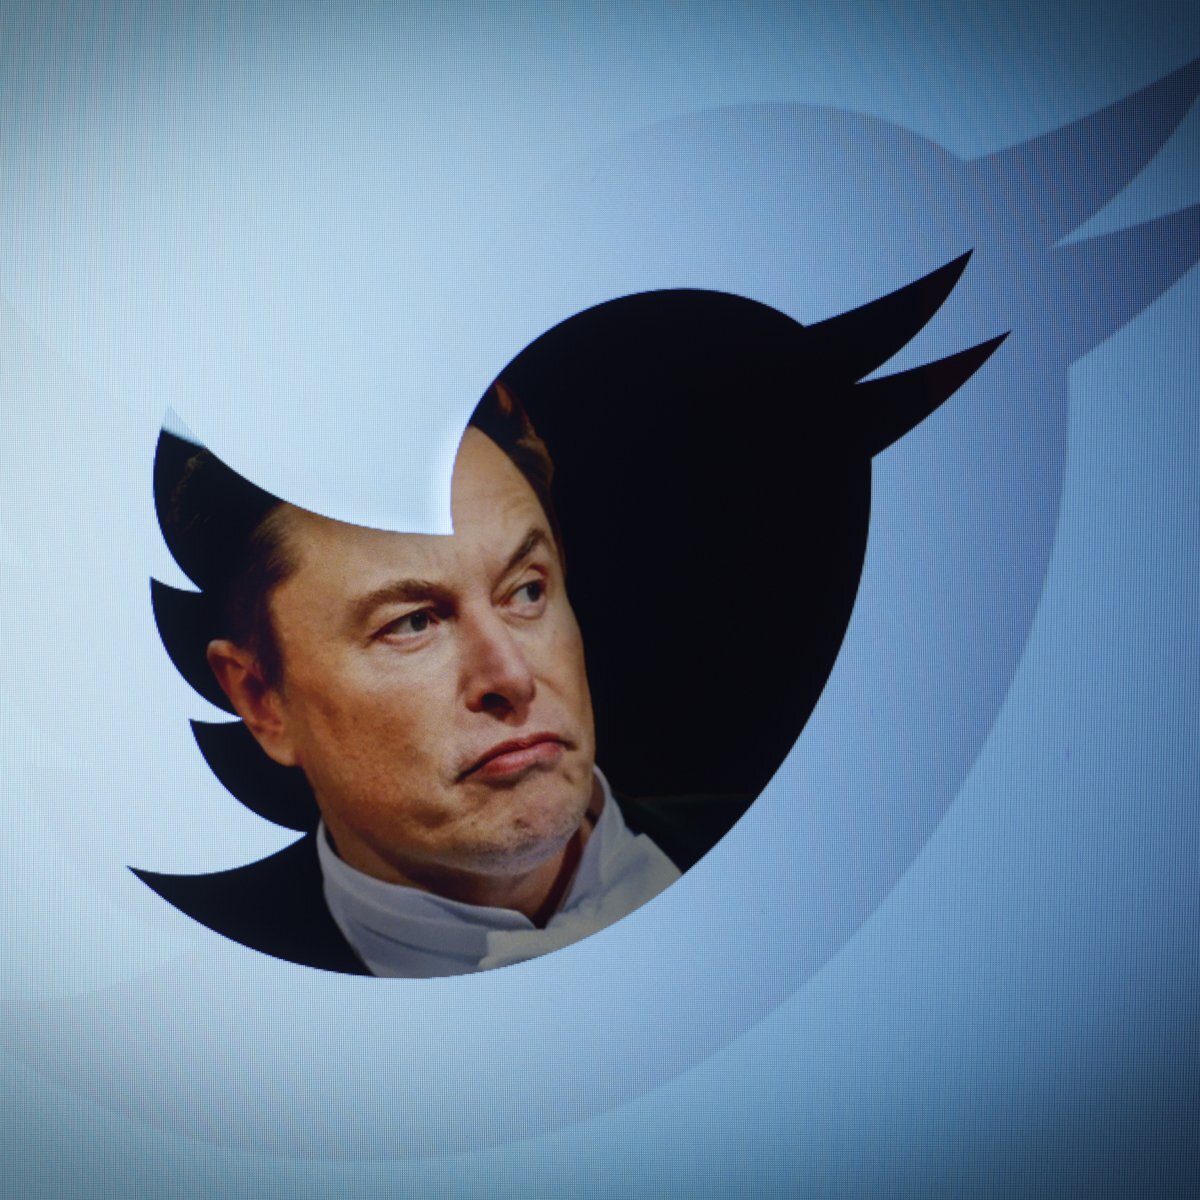 У Илона Маска паранойя: он считает, что сотрудники Twitter специально подрывают работу компании